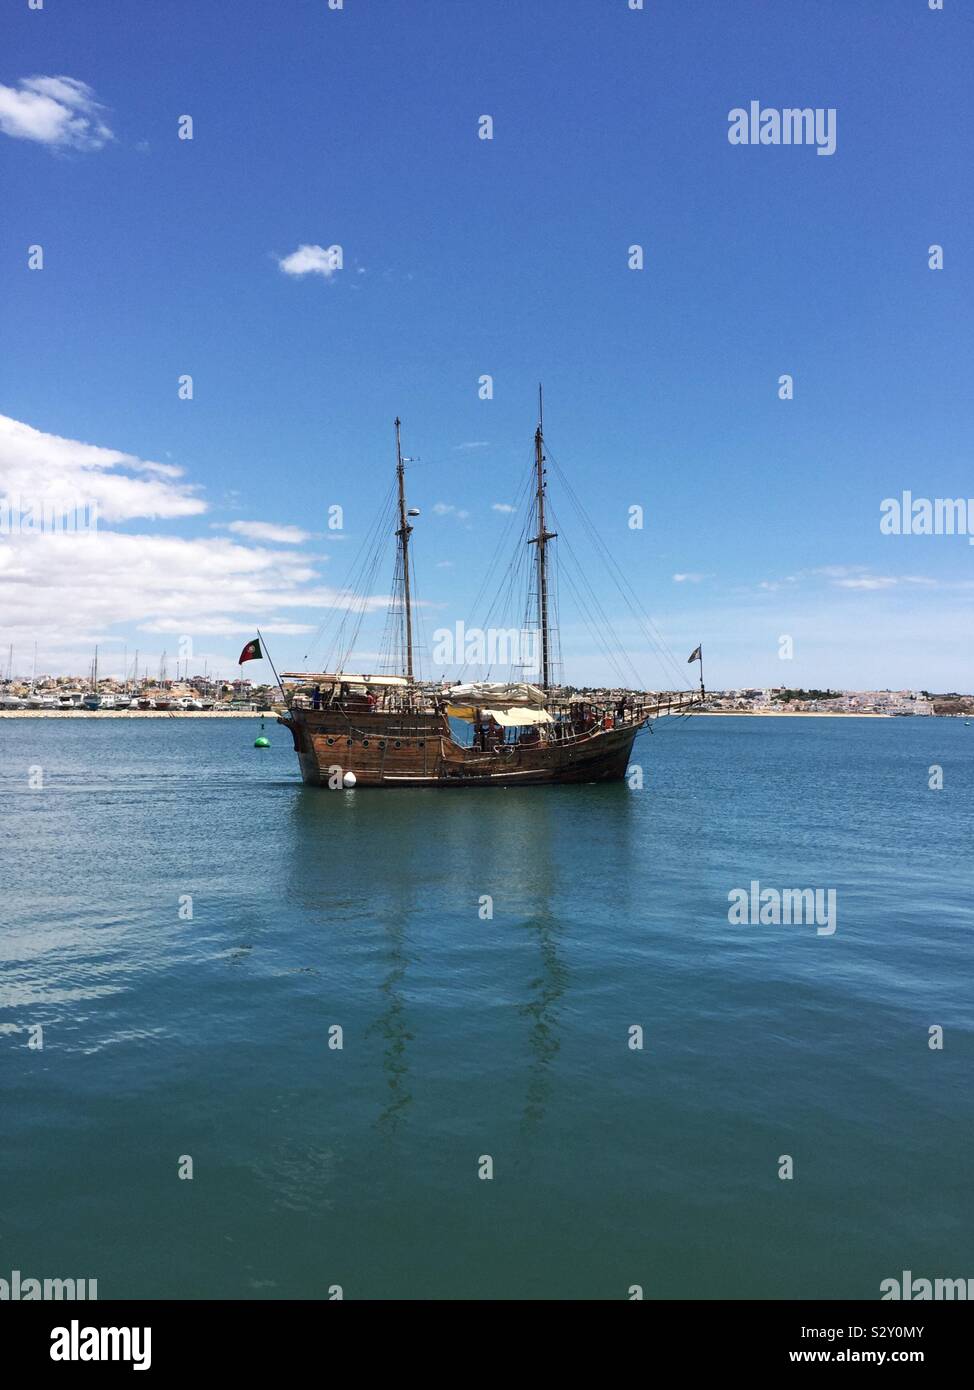 Pirate ship, Portimao, Portugal. June 2019 Stock Photo